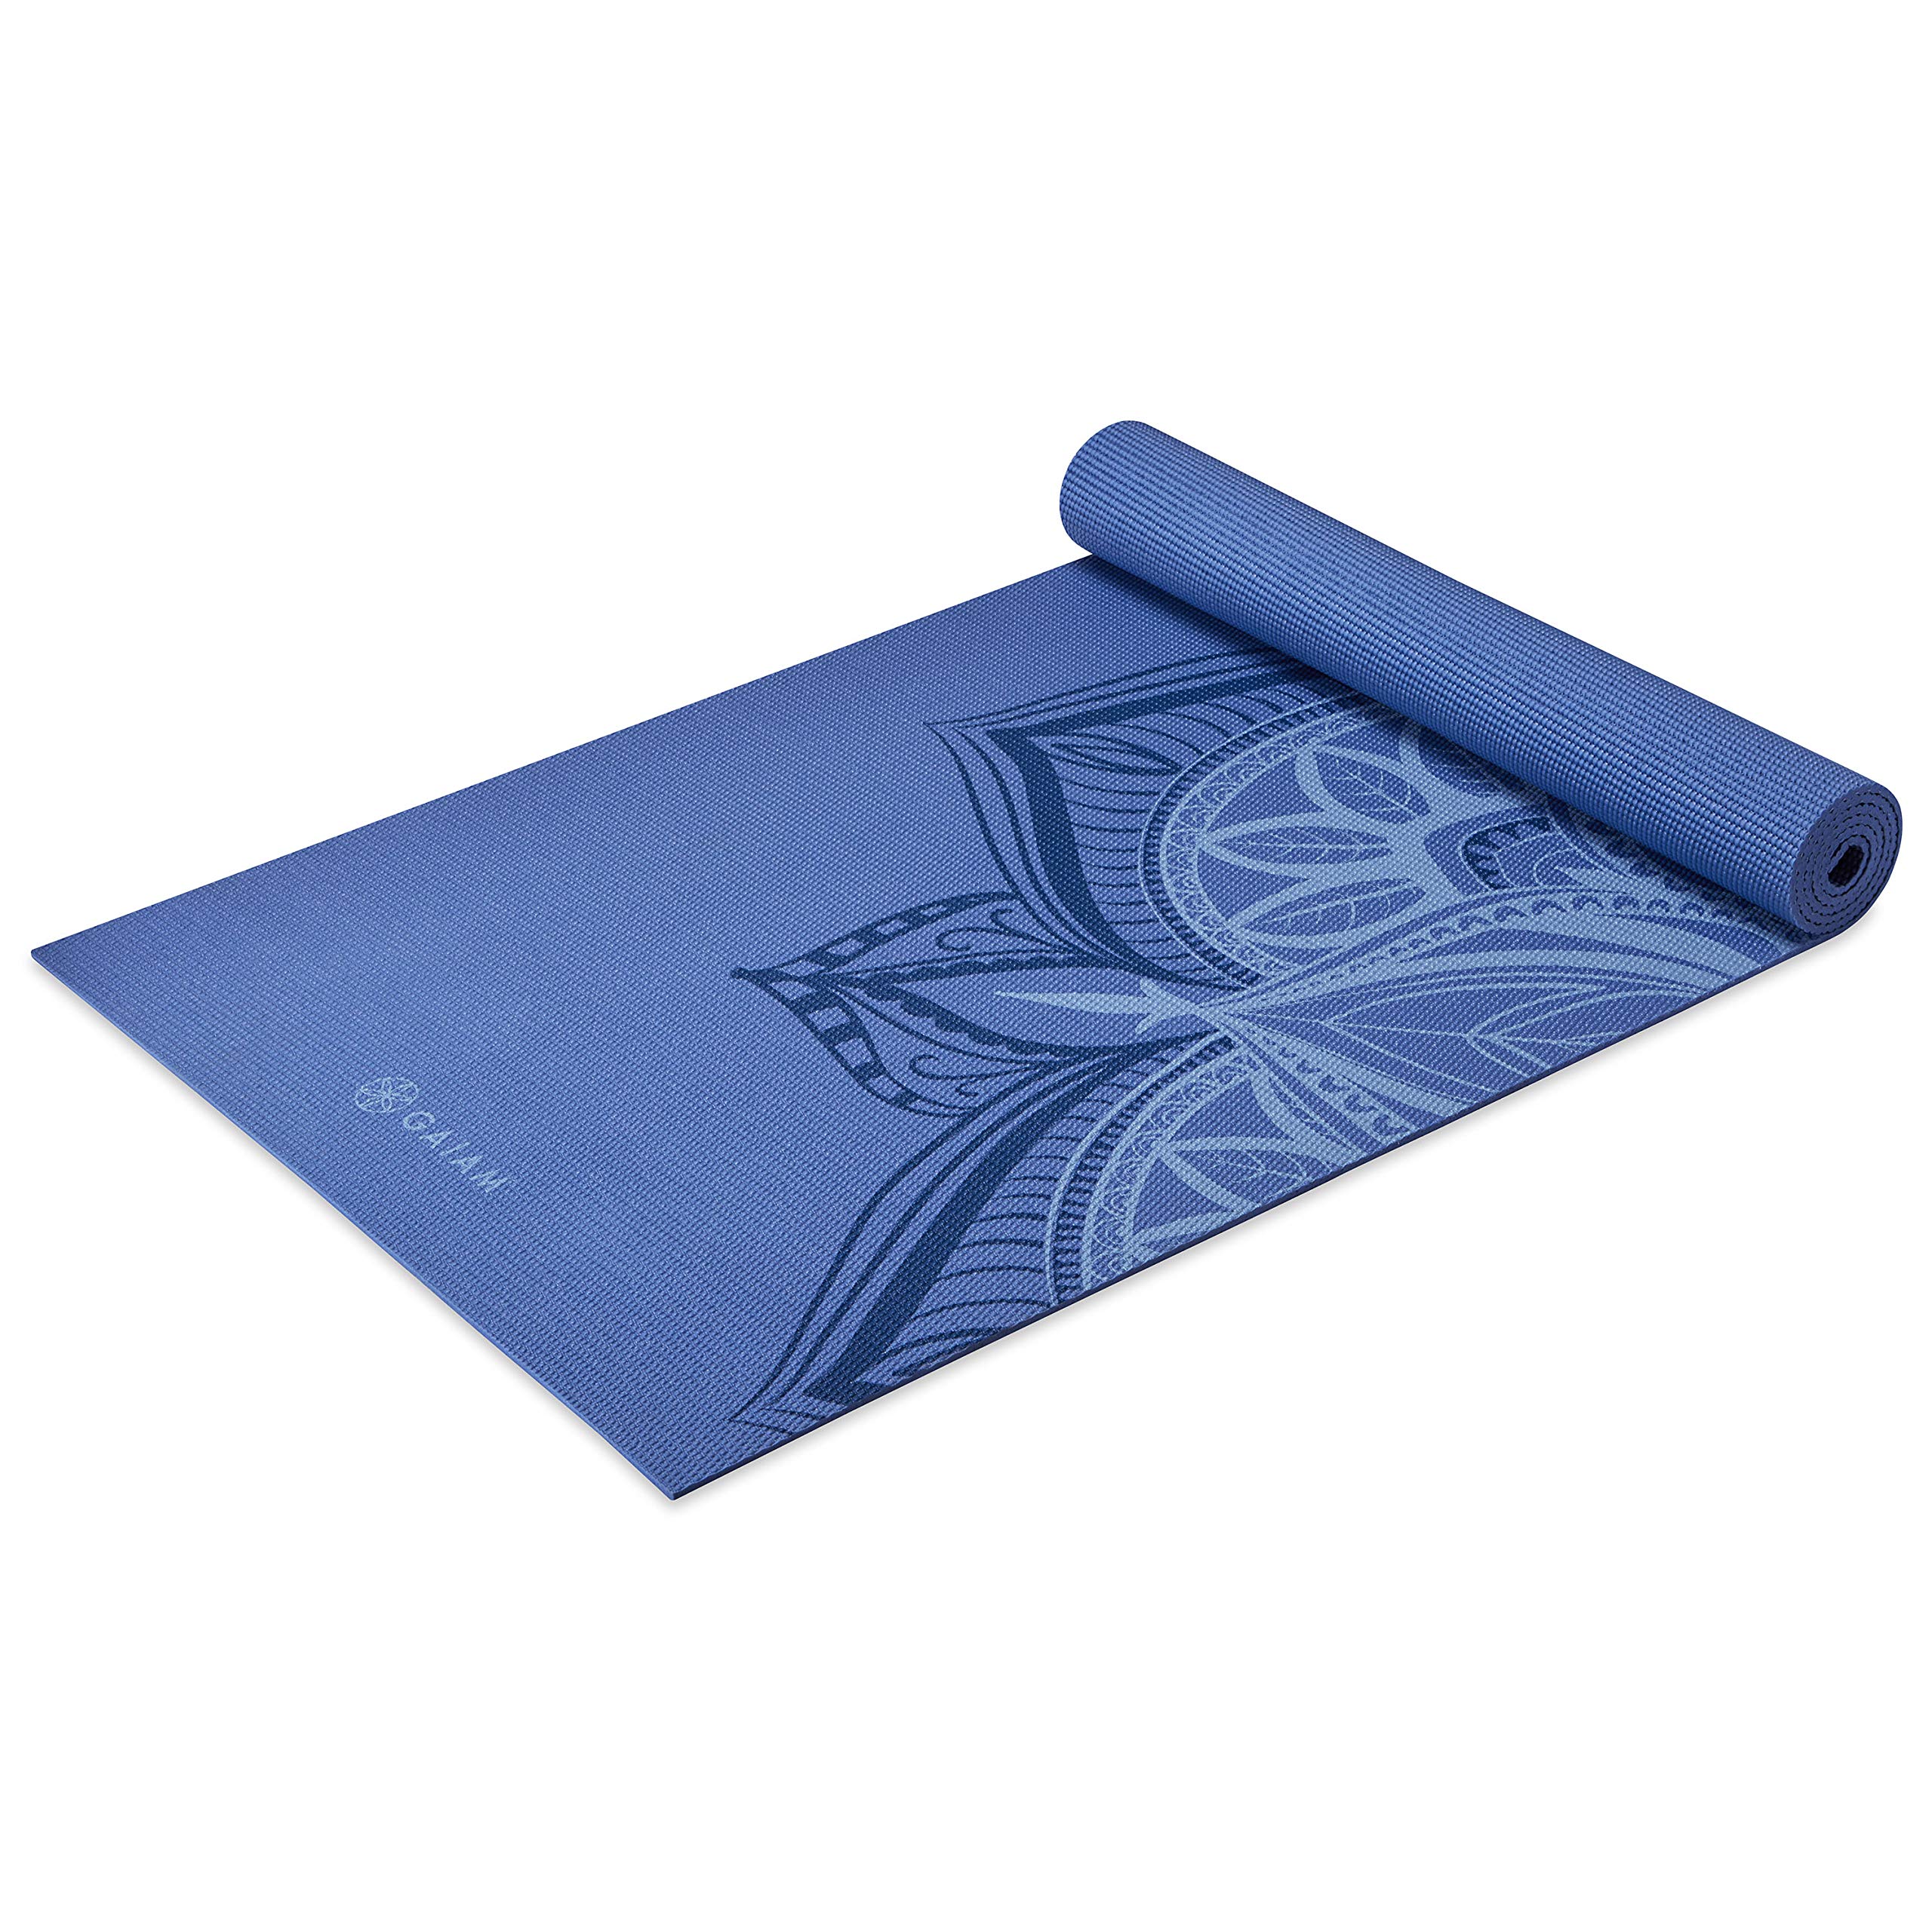 Gaiam Yoga Mat - Premium 5mm Print Thick Non Slip Exercise